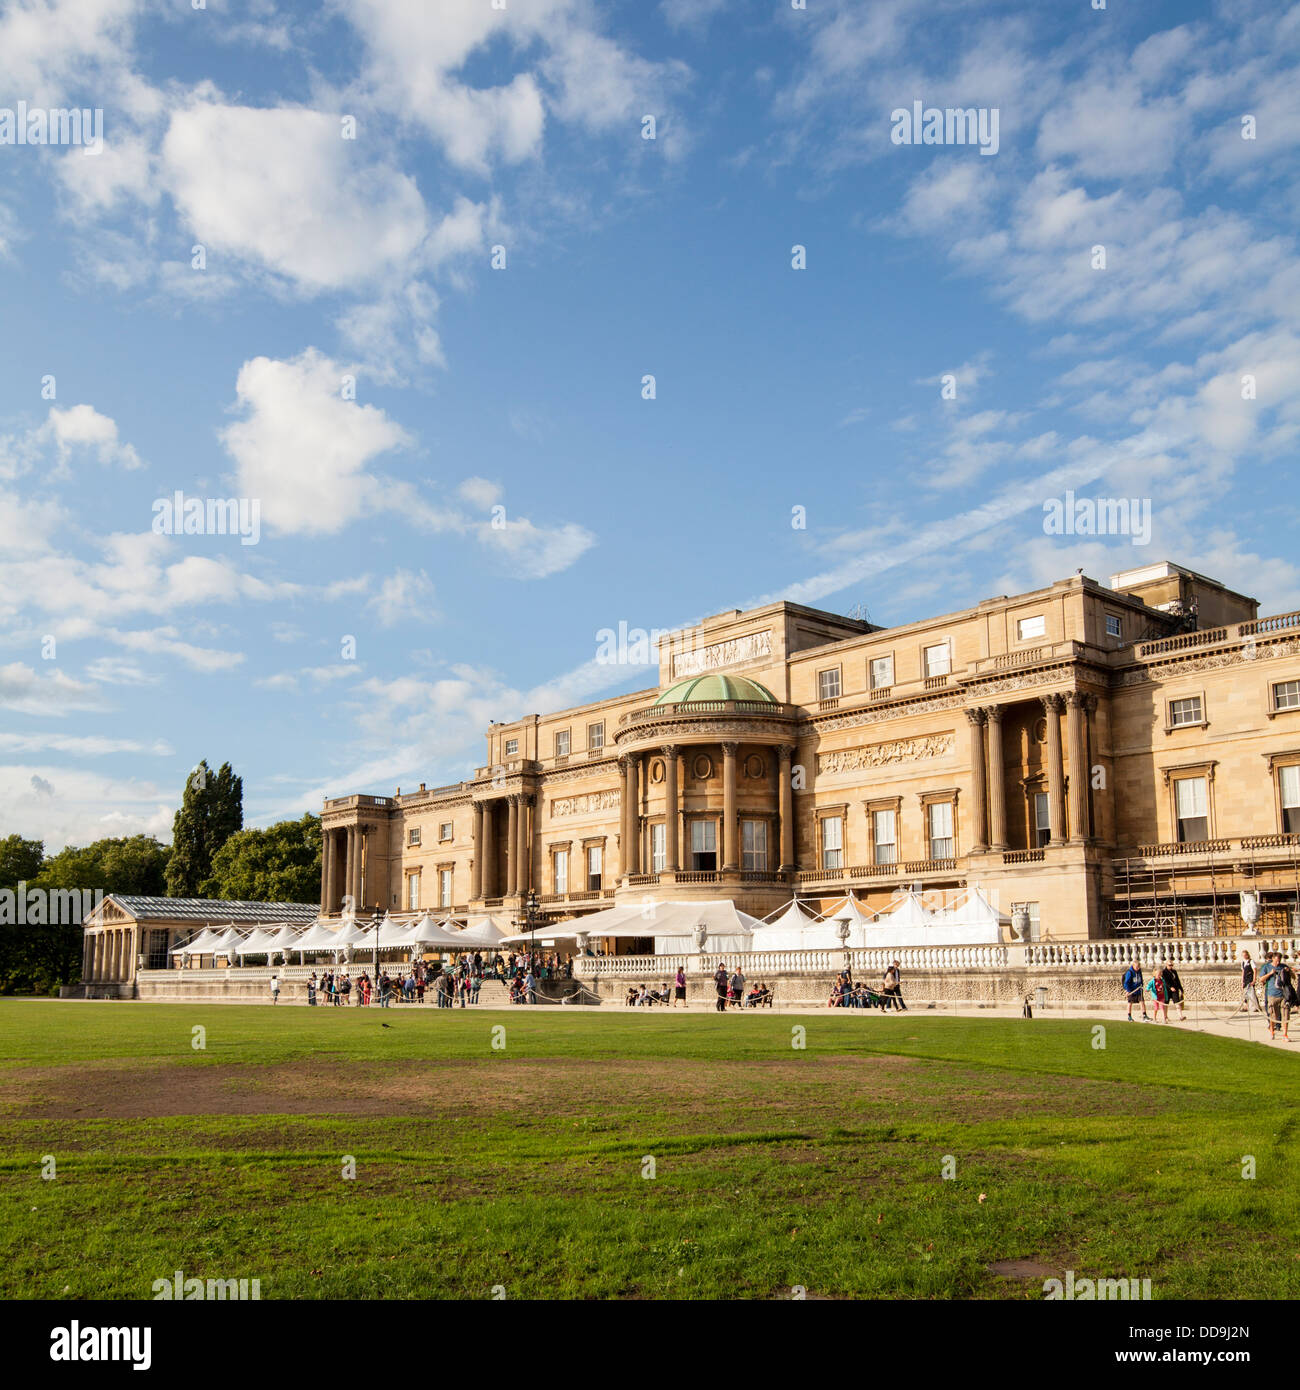 La terrasse arrière du palais de Buckingham, Londres, Angleterre Banque D'Images